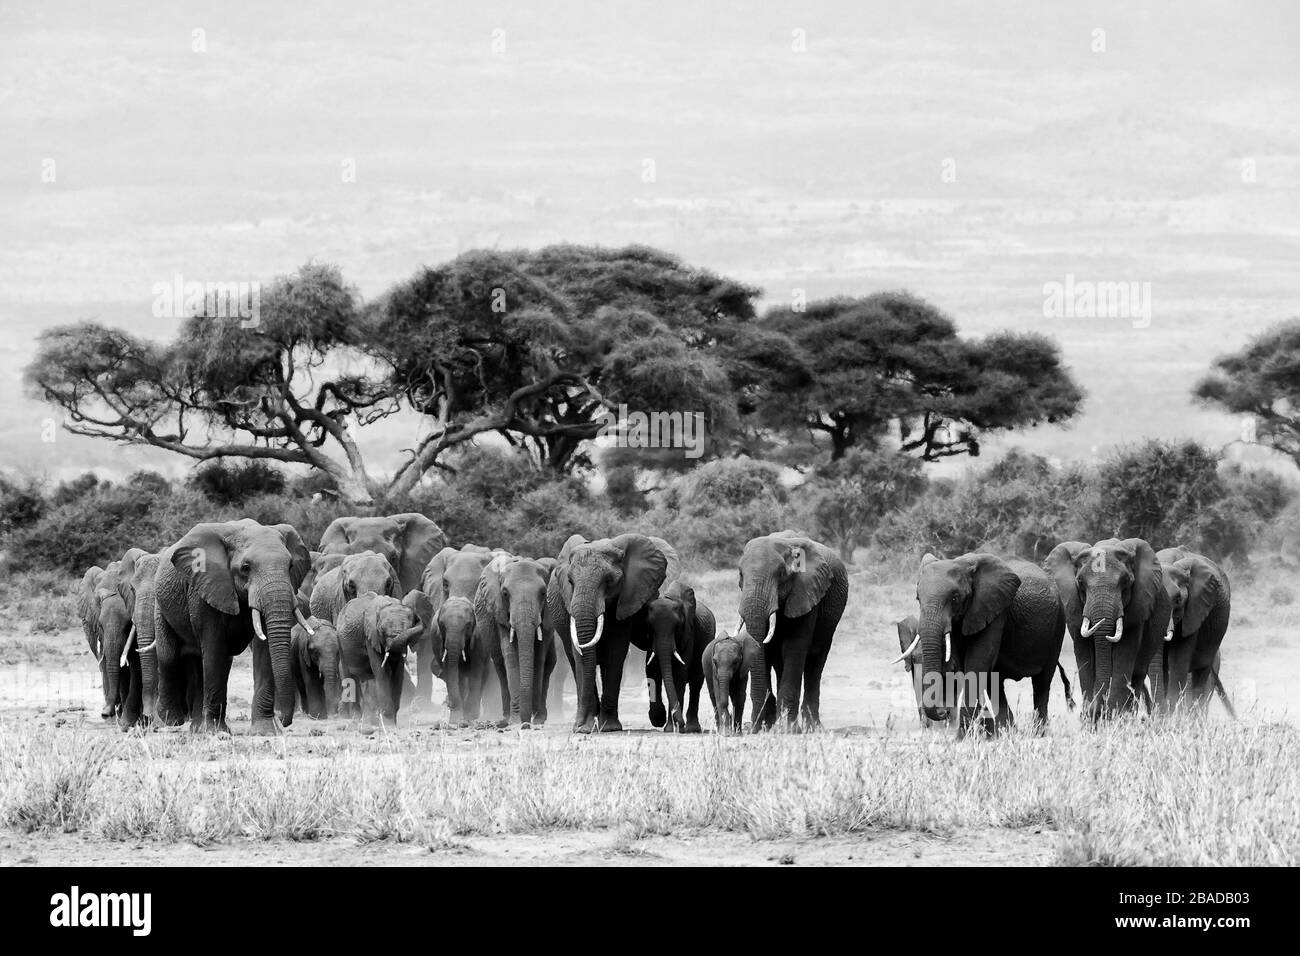 La imagen del rebaño de elefantes africanos (Loxodonta africana) en el parque nacional de Amboseli, Kenia Foto de stock